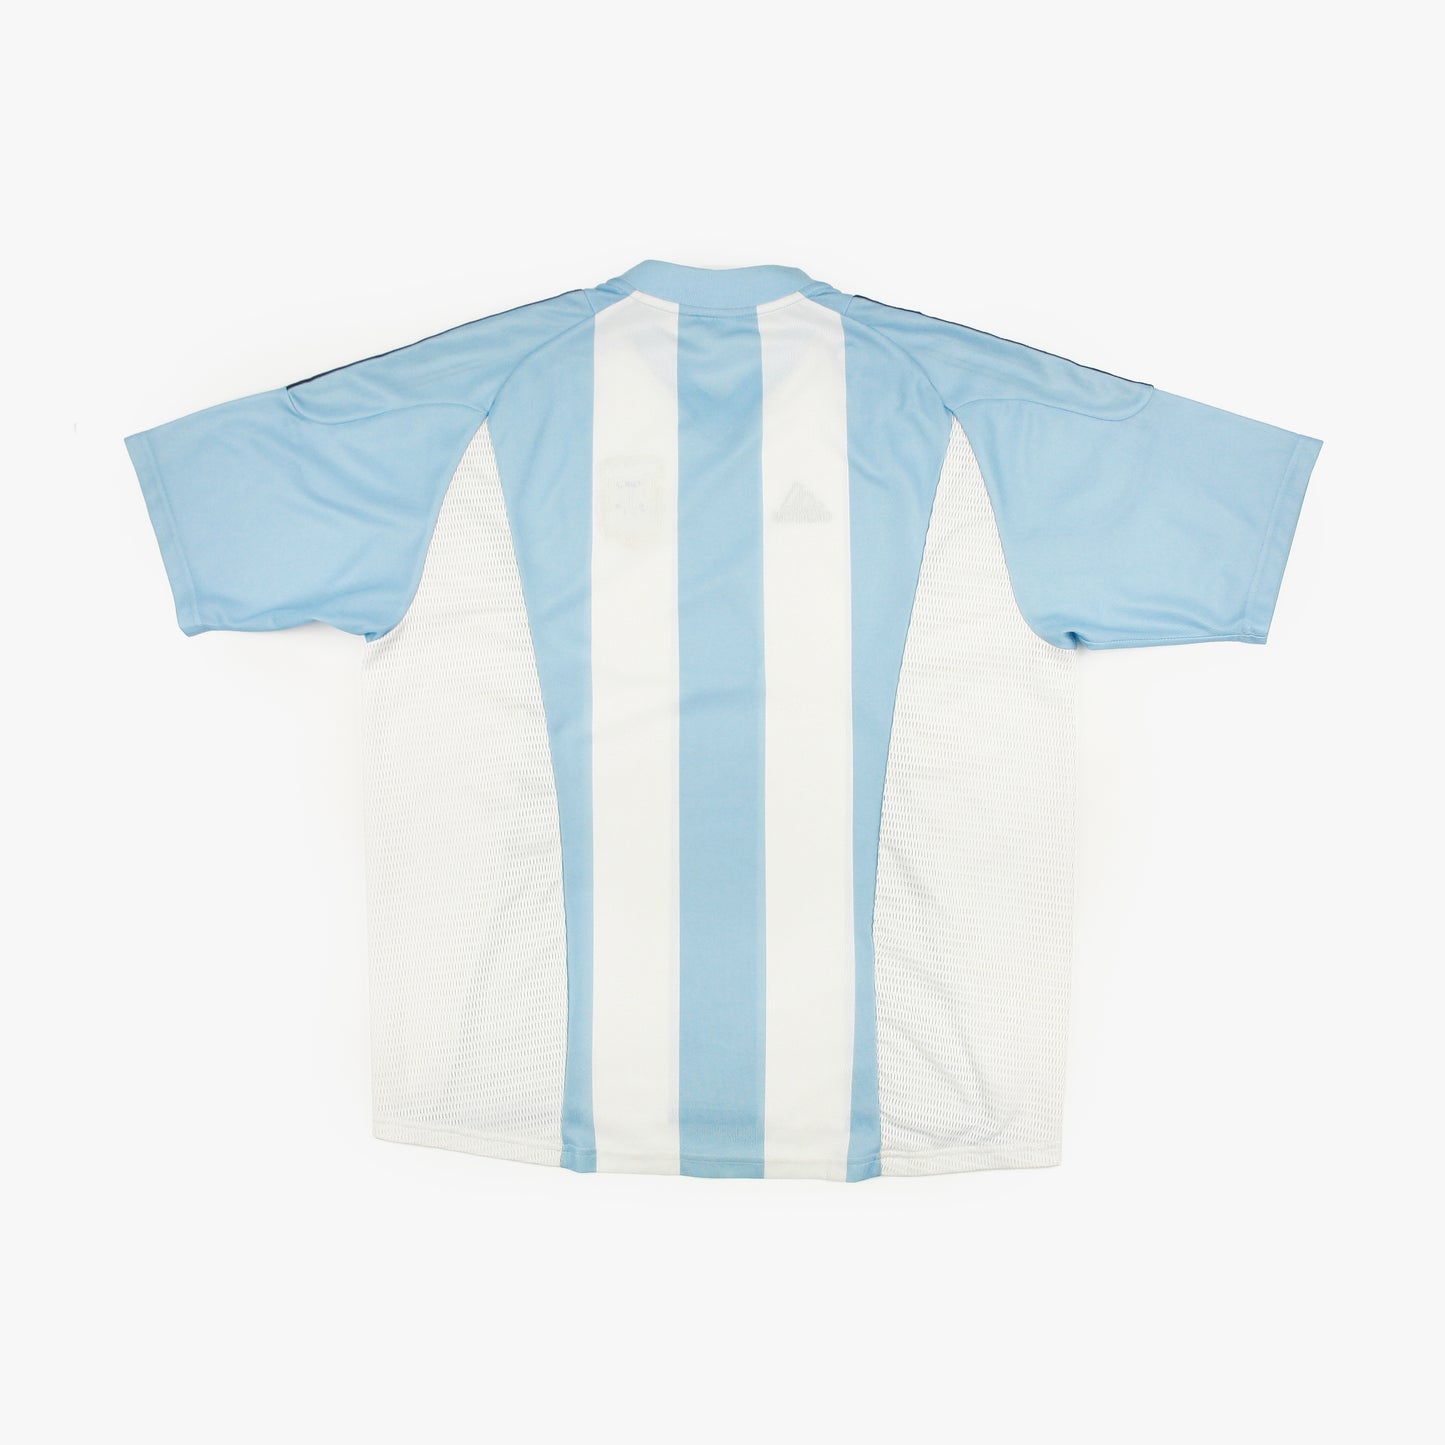 Argentina 02/04 • Camiseta Local • XL